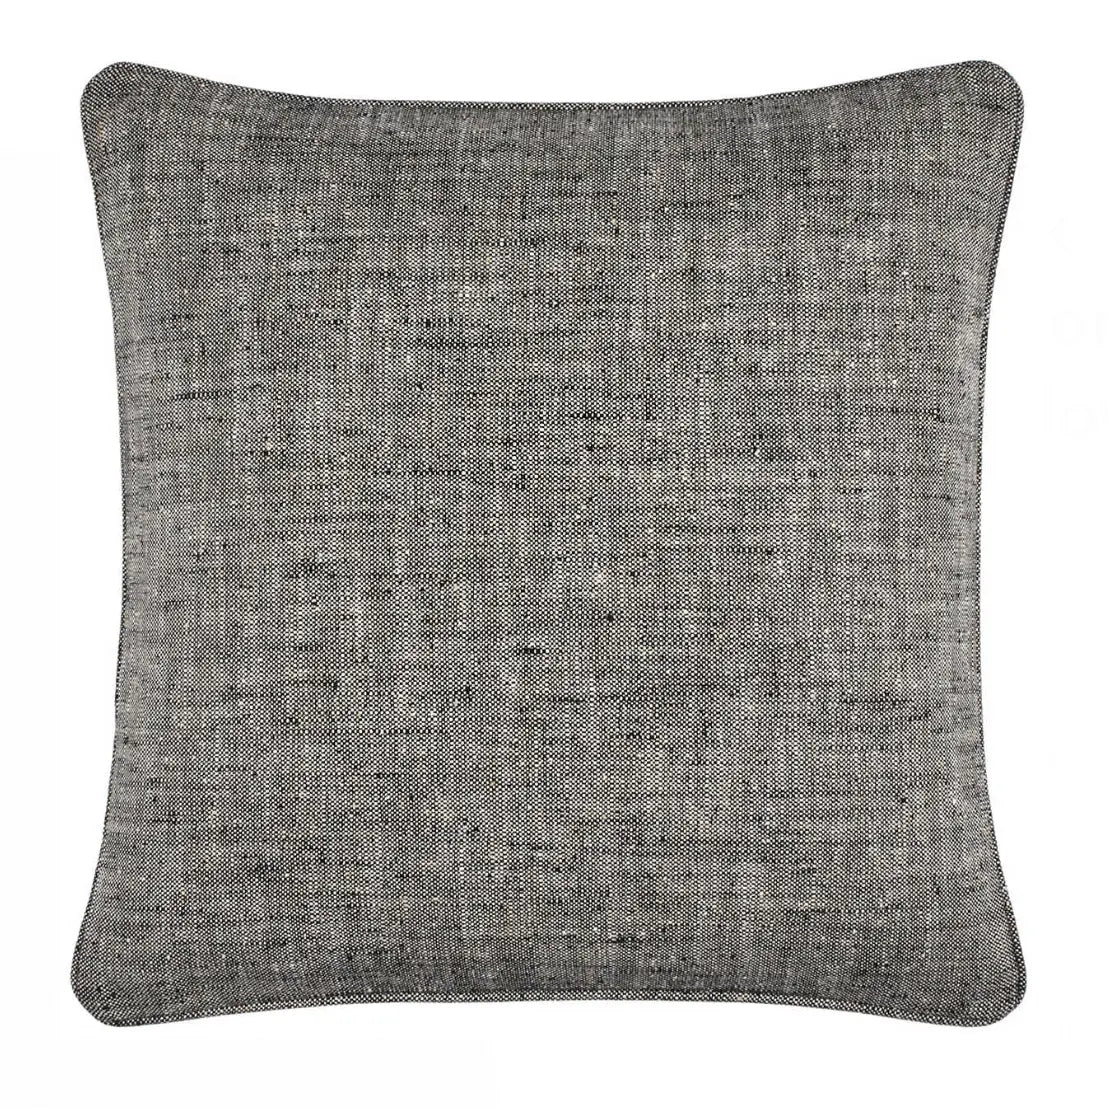 Home Smith Greylock Black Indoor Outdoor Pillow Annie Selke Indoor/Outdoor Pillows